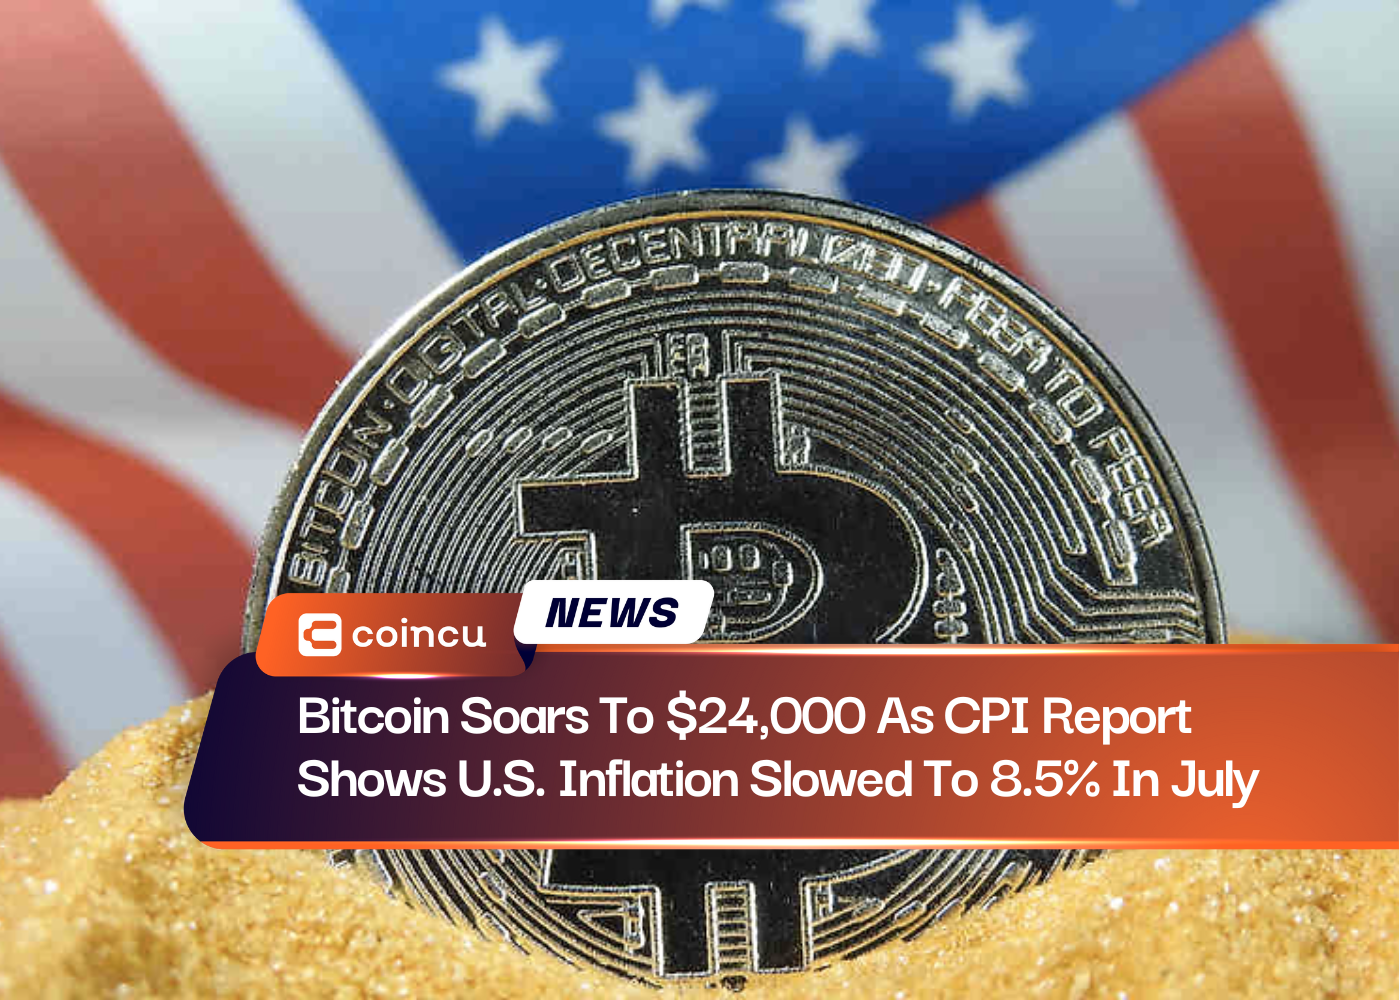 Bitcoin grimpe à 24,000 8.5 $ alors que le rapport CPI montre que l'inflation américaine a ralenti à XNUMX % en juillet